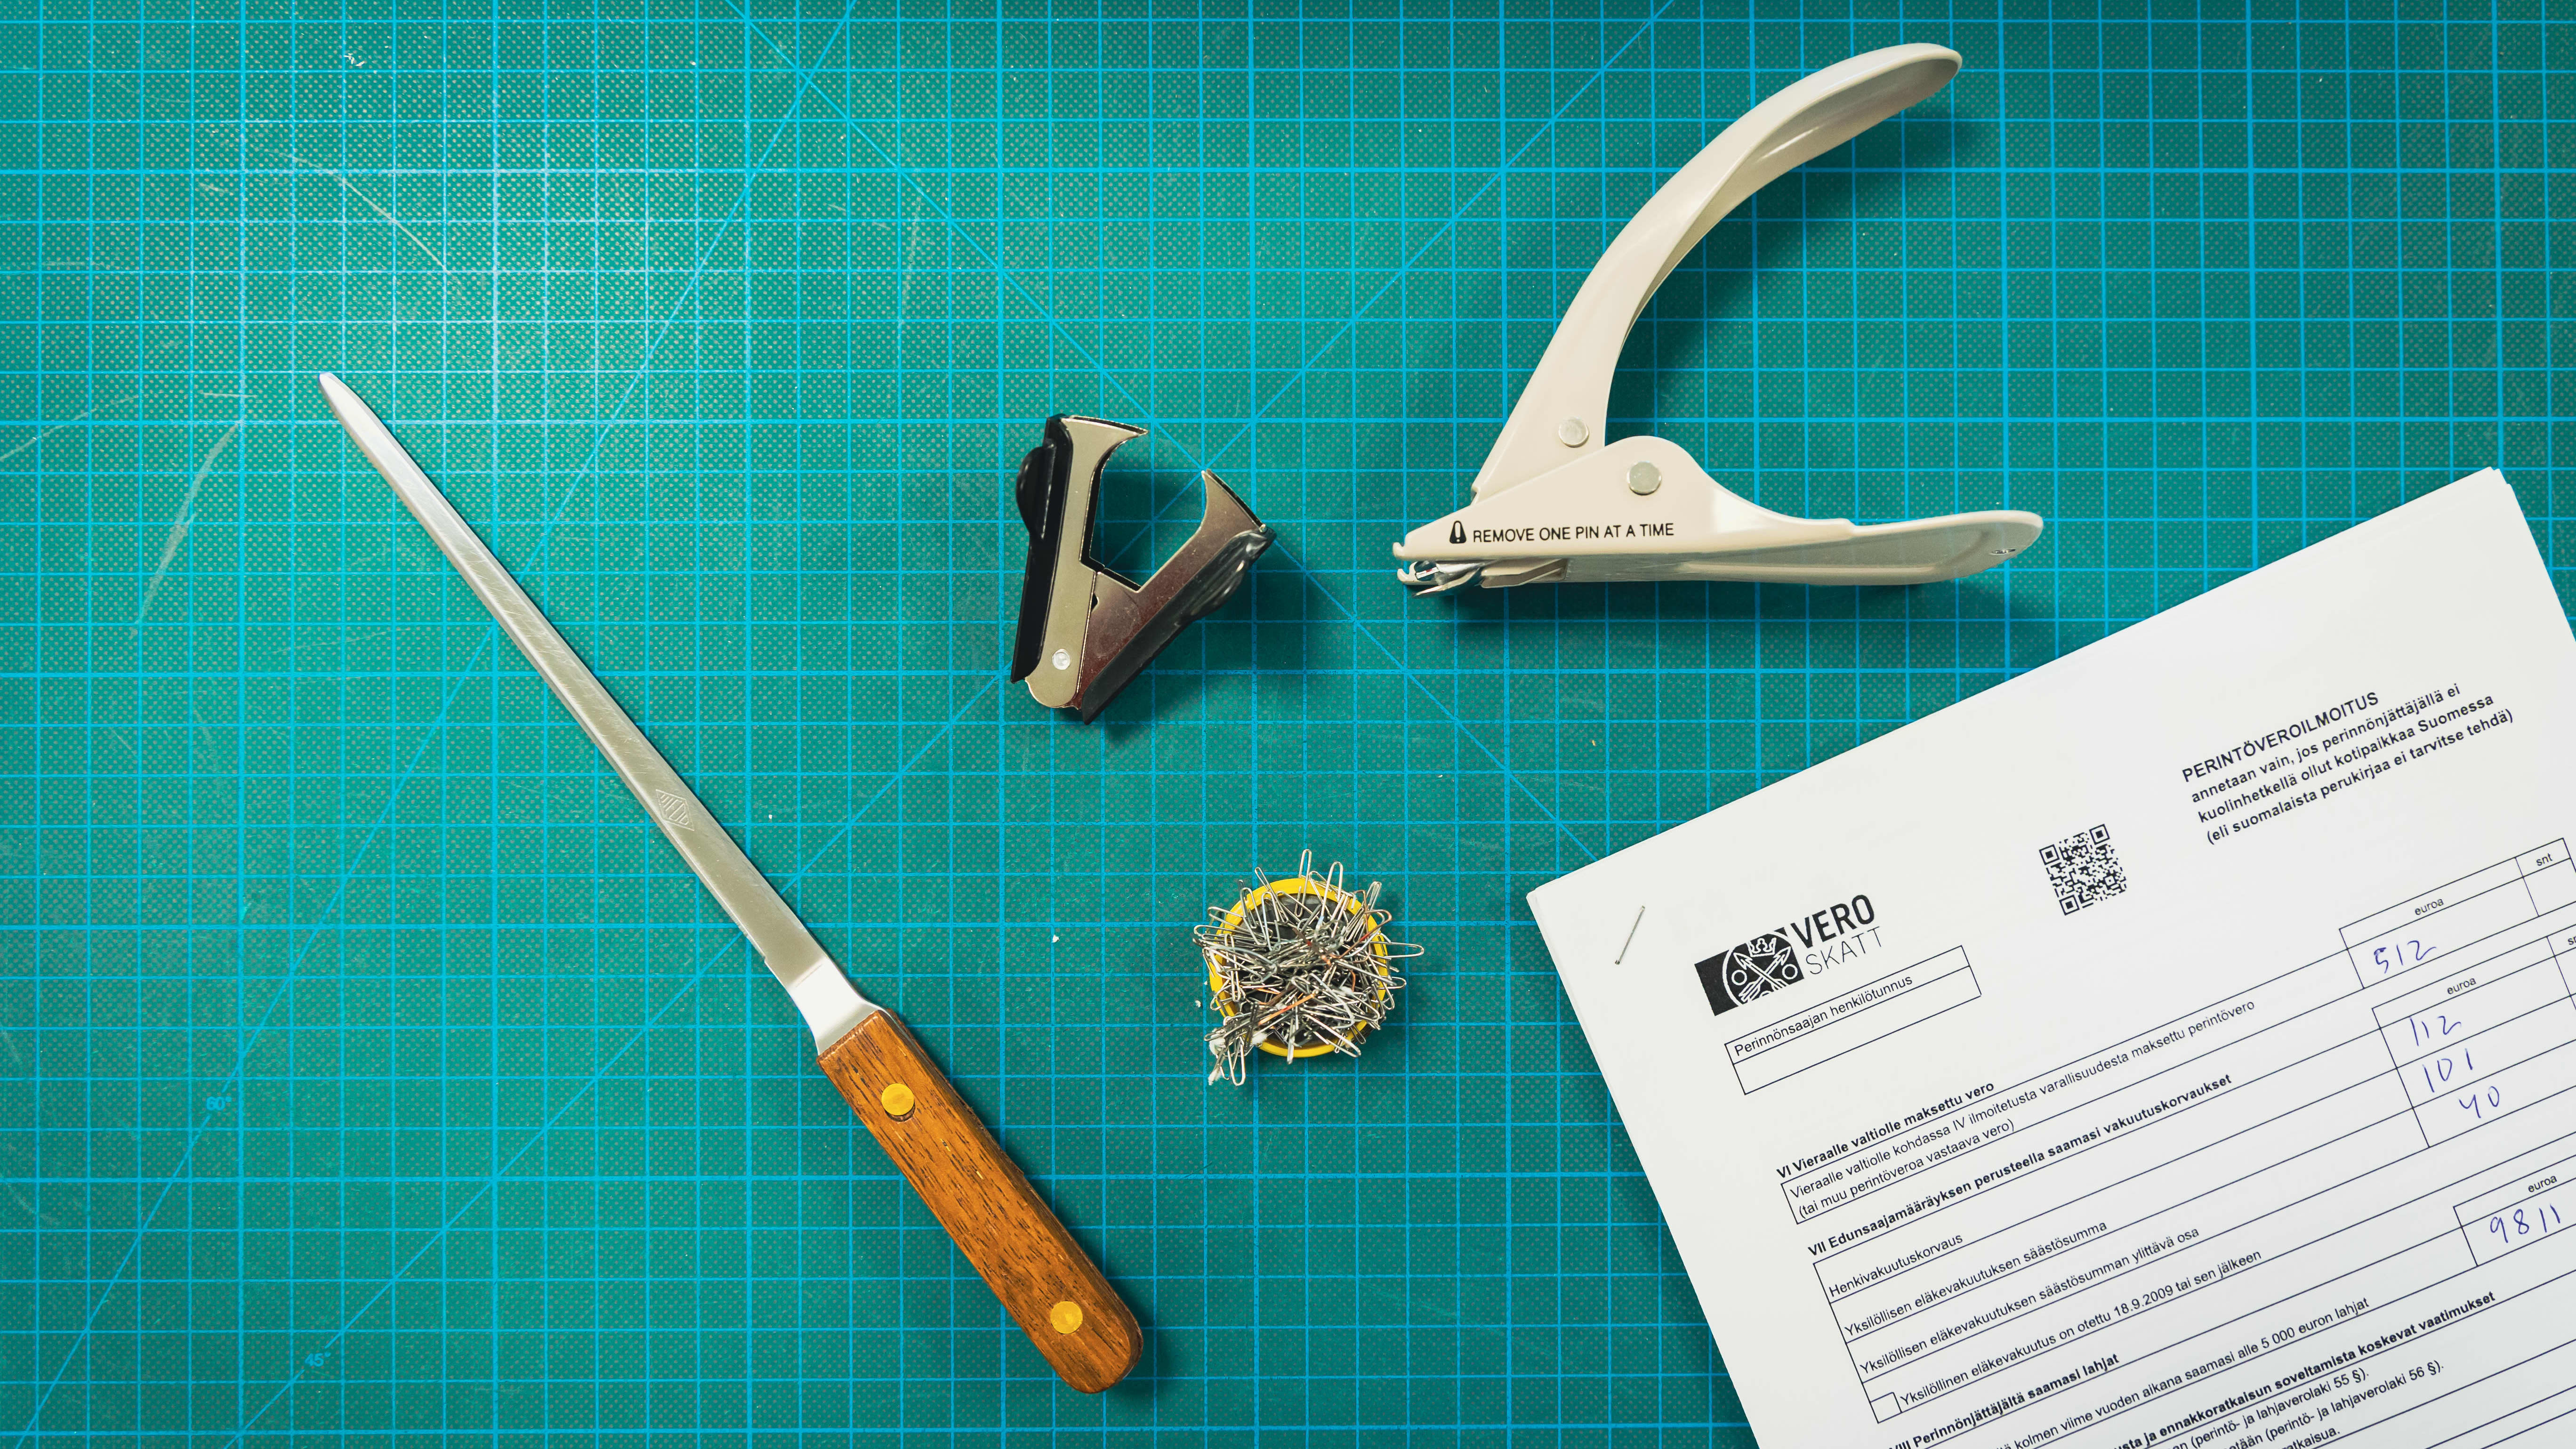 Kansallisarkiston työkaluja joita käytetään niittien poistoon asiakirjoista.